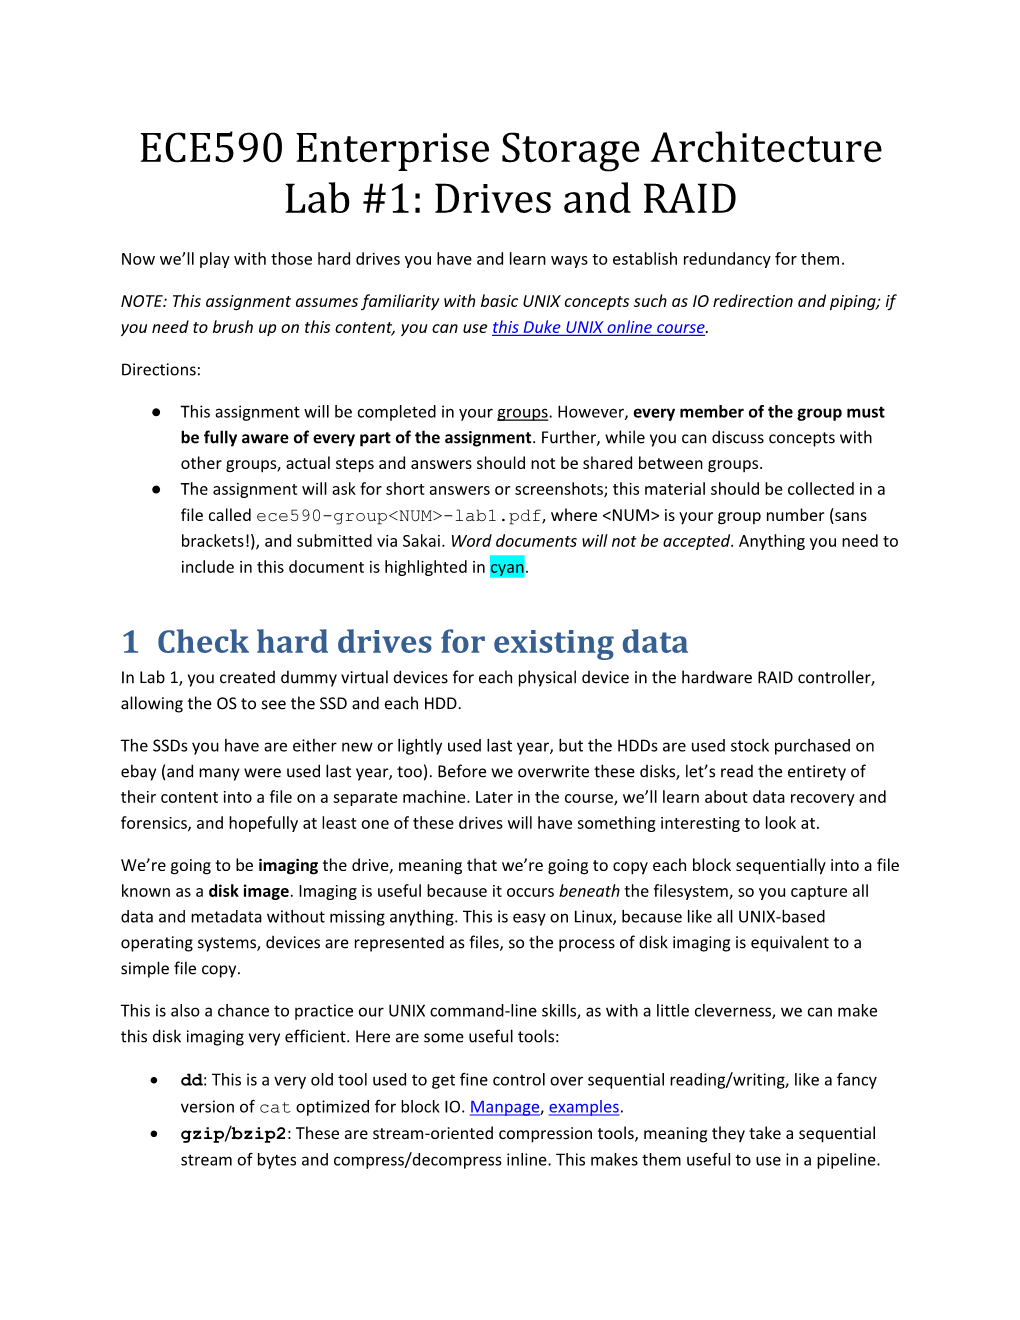 ECE590 Enterprise Storage Architecture Lab #1: Drives and RAID